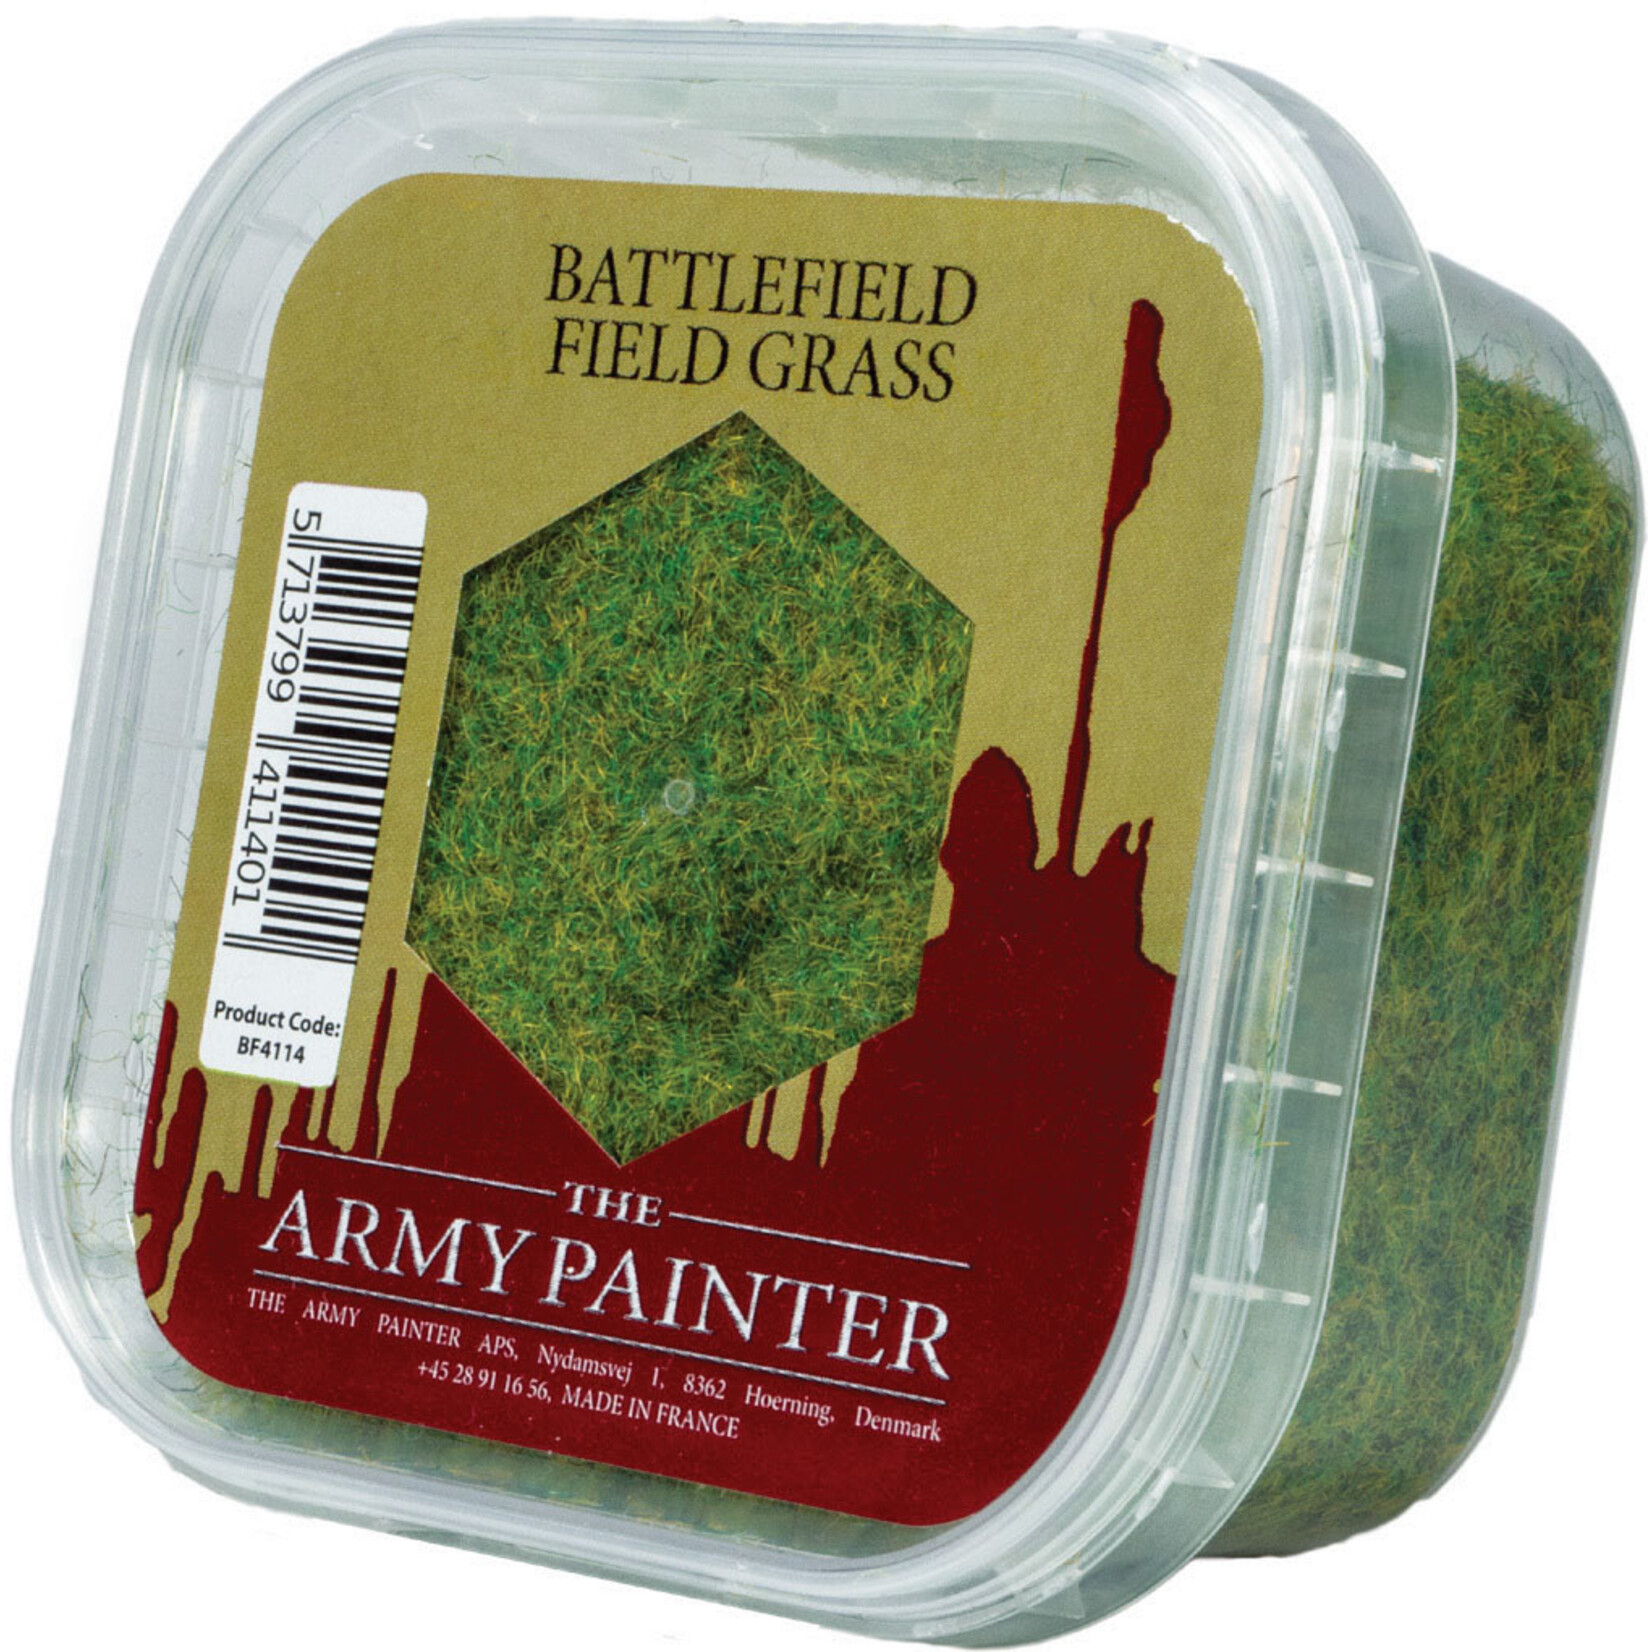 Army Painter Battlefields: Battlefield Field Grass